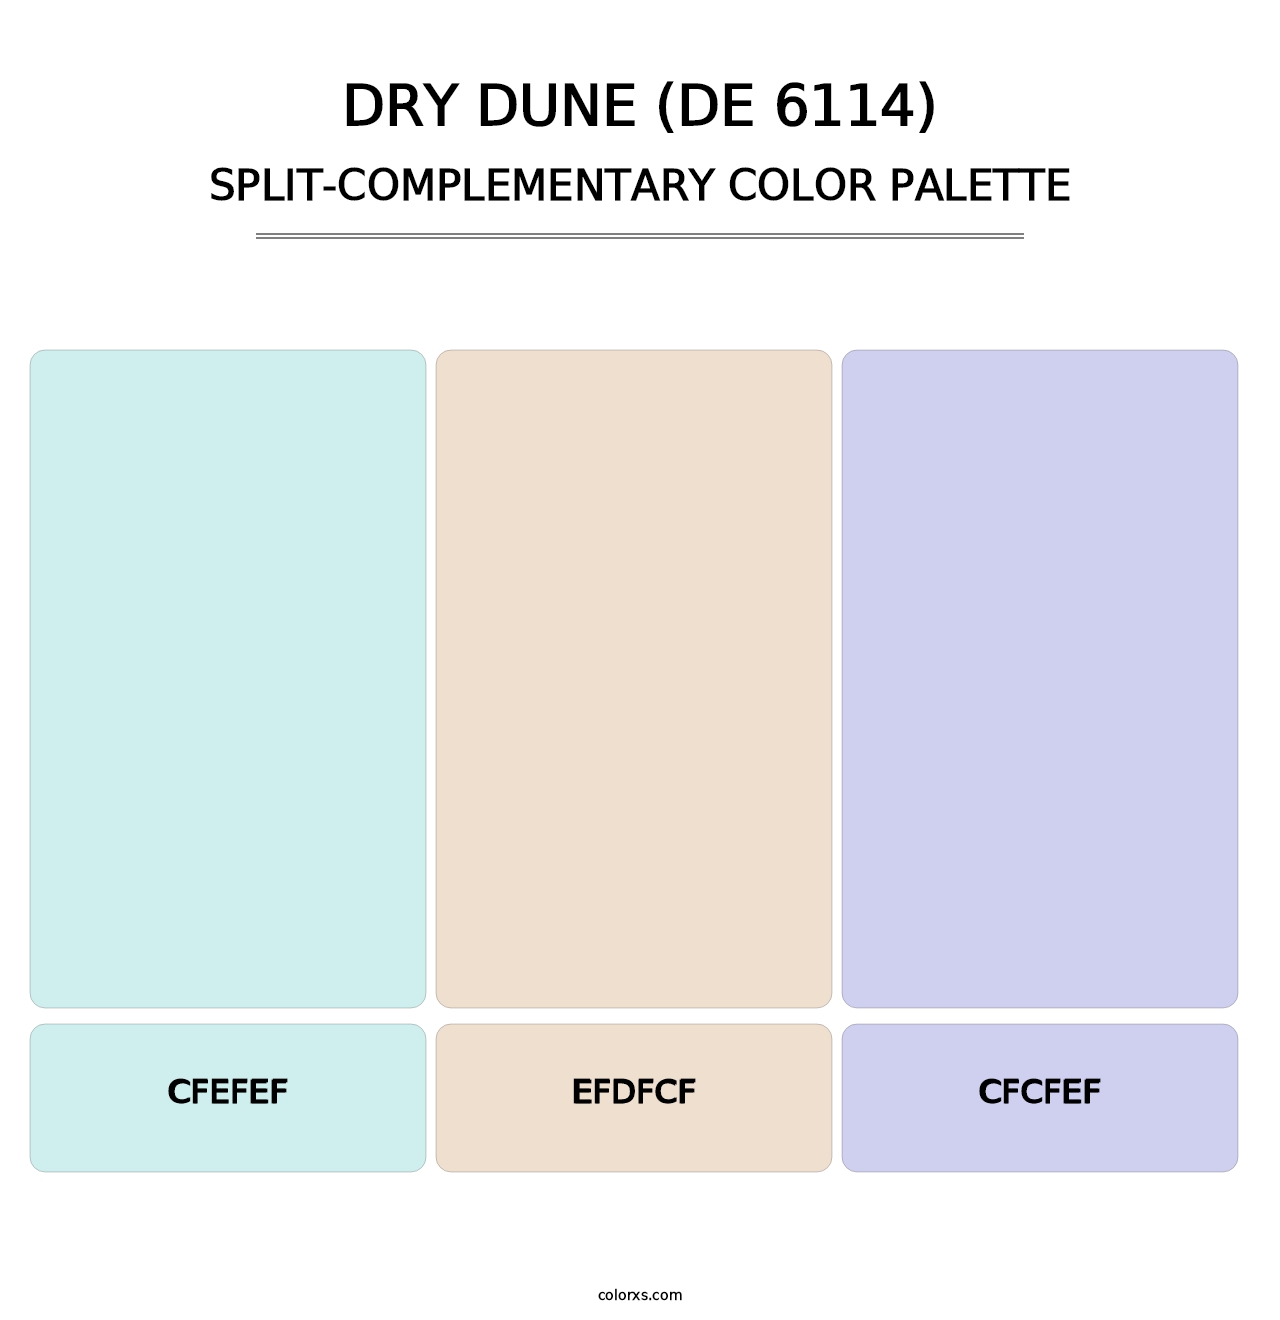 Dry Dune (DE 6114) - Split-Complementary Color Palette